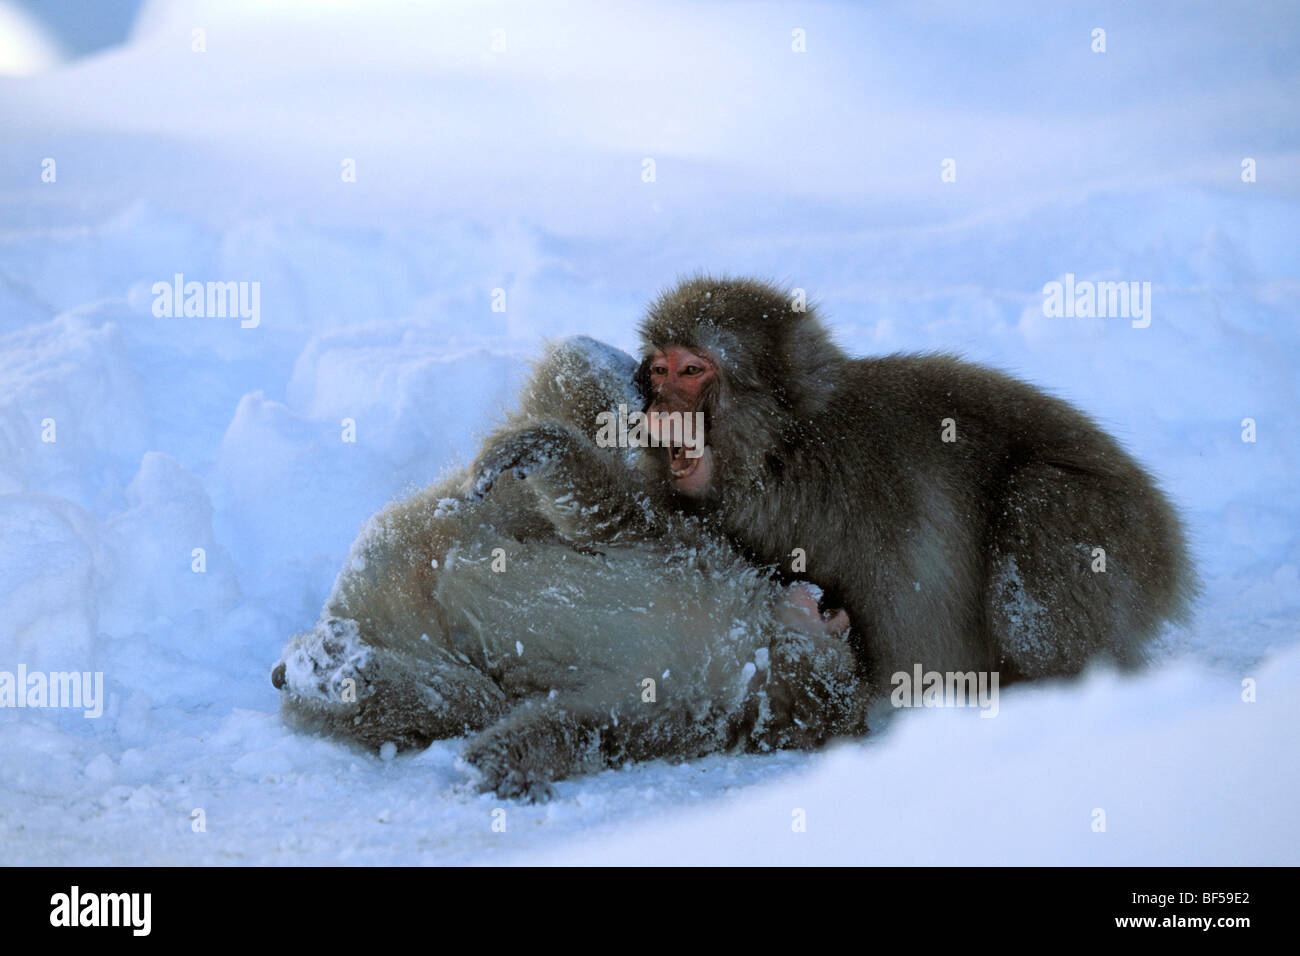 Giovani scimmie di neve, macachi giapponesi (Macaca fuscata) giocare nella neve, nevicata, Alpi Giapponesi, Giappone, Asia Foto Stock